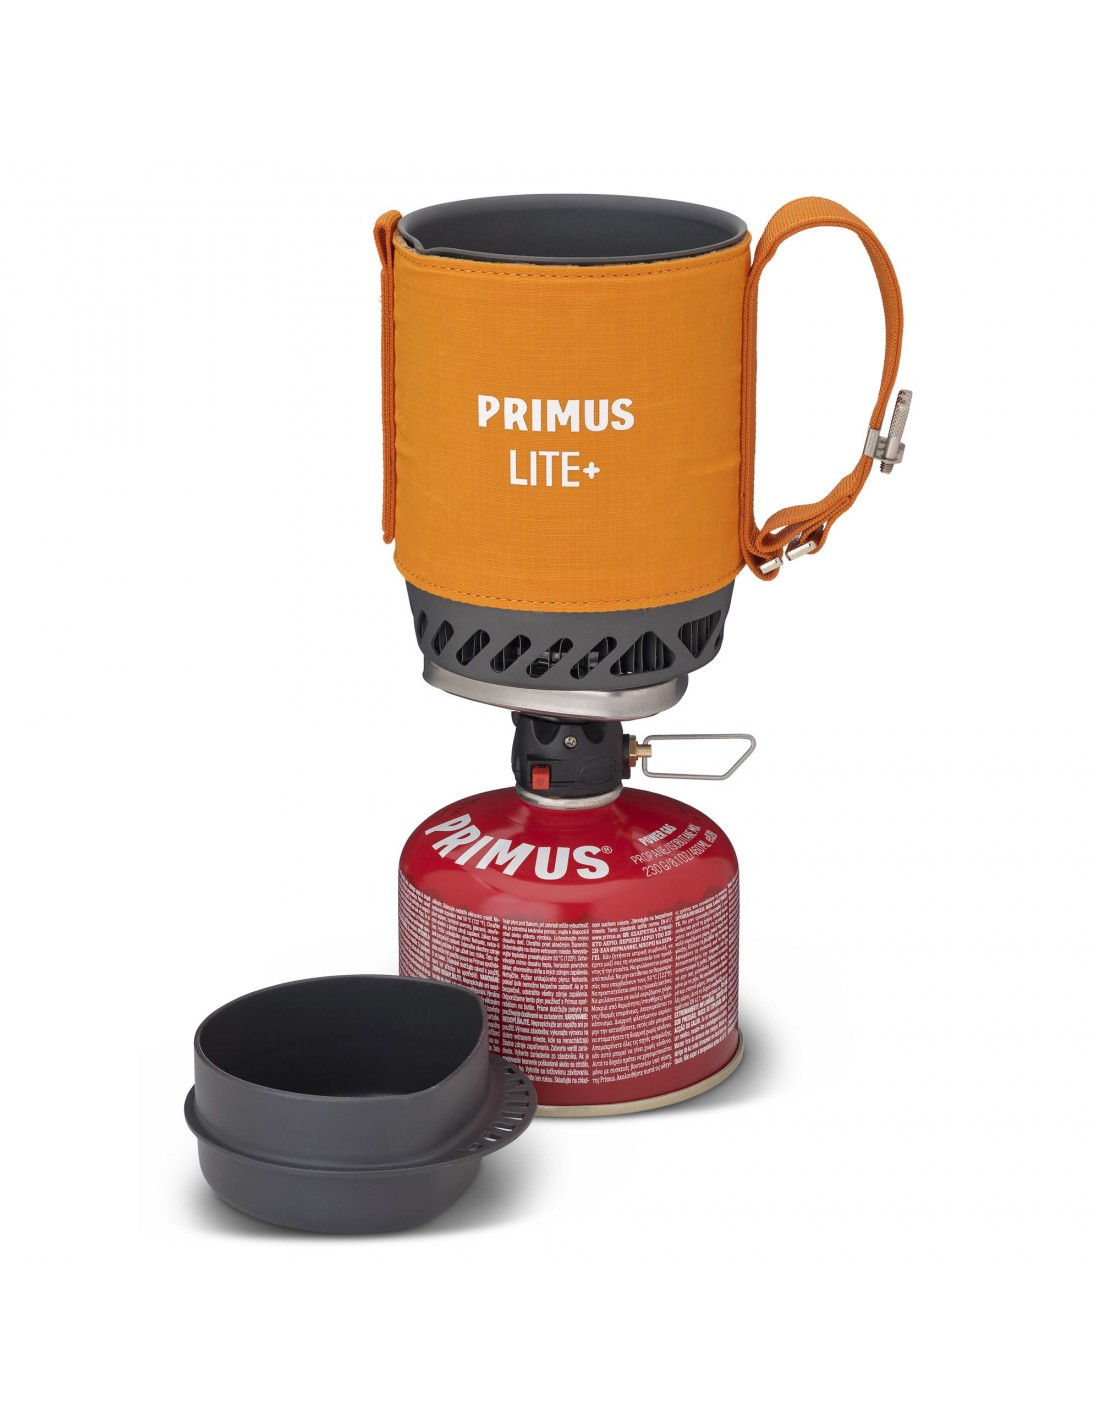 Primus Lite Plus Stove System Orange Kocher Konstruktion - Kartusche darunter, Kocher Brennstoff - Butan / Propan, Kocher Variante - Einflammenkocher, Kocher Gewicht - 401 - 500 g, von Primus